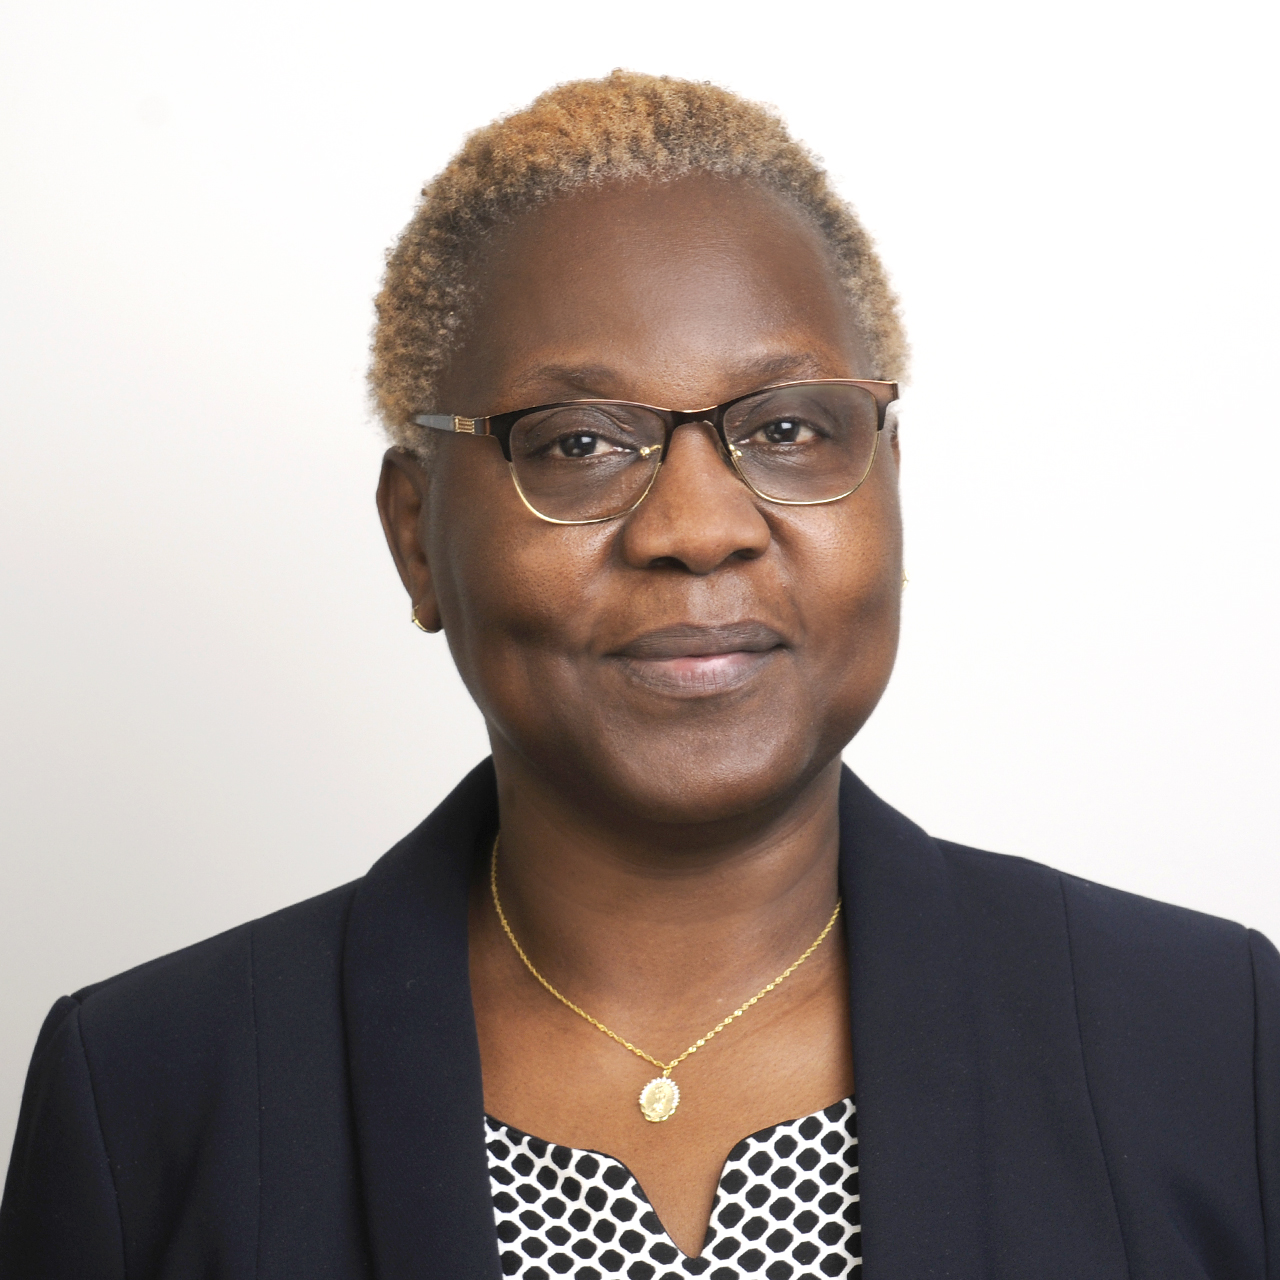 Headshot of the CICS secretary, Ruth Onyancha